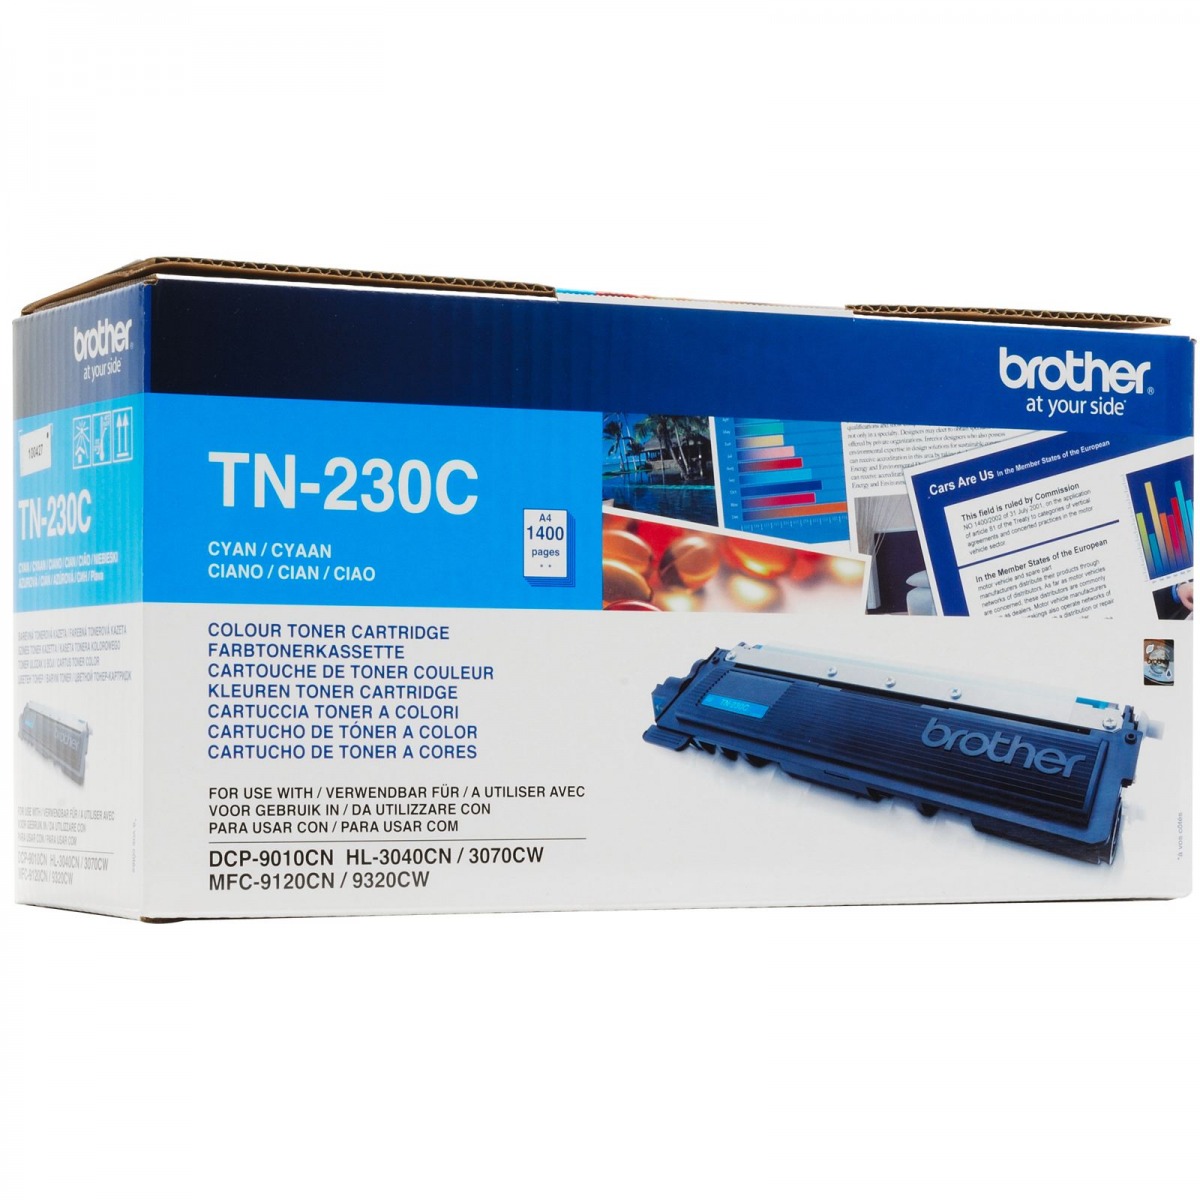 TN-230C Lygiavertė kasetė